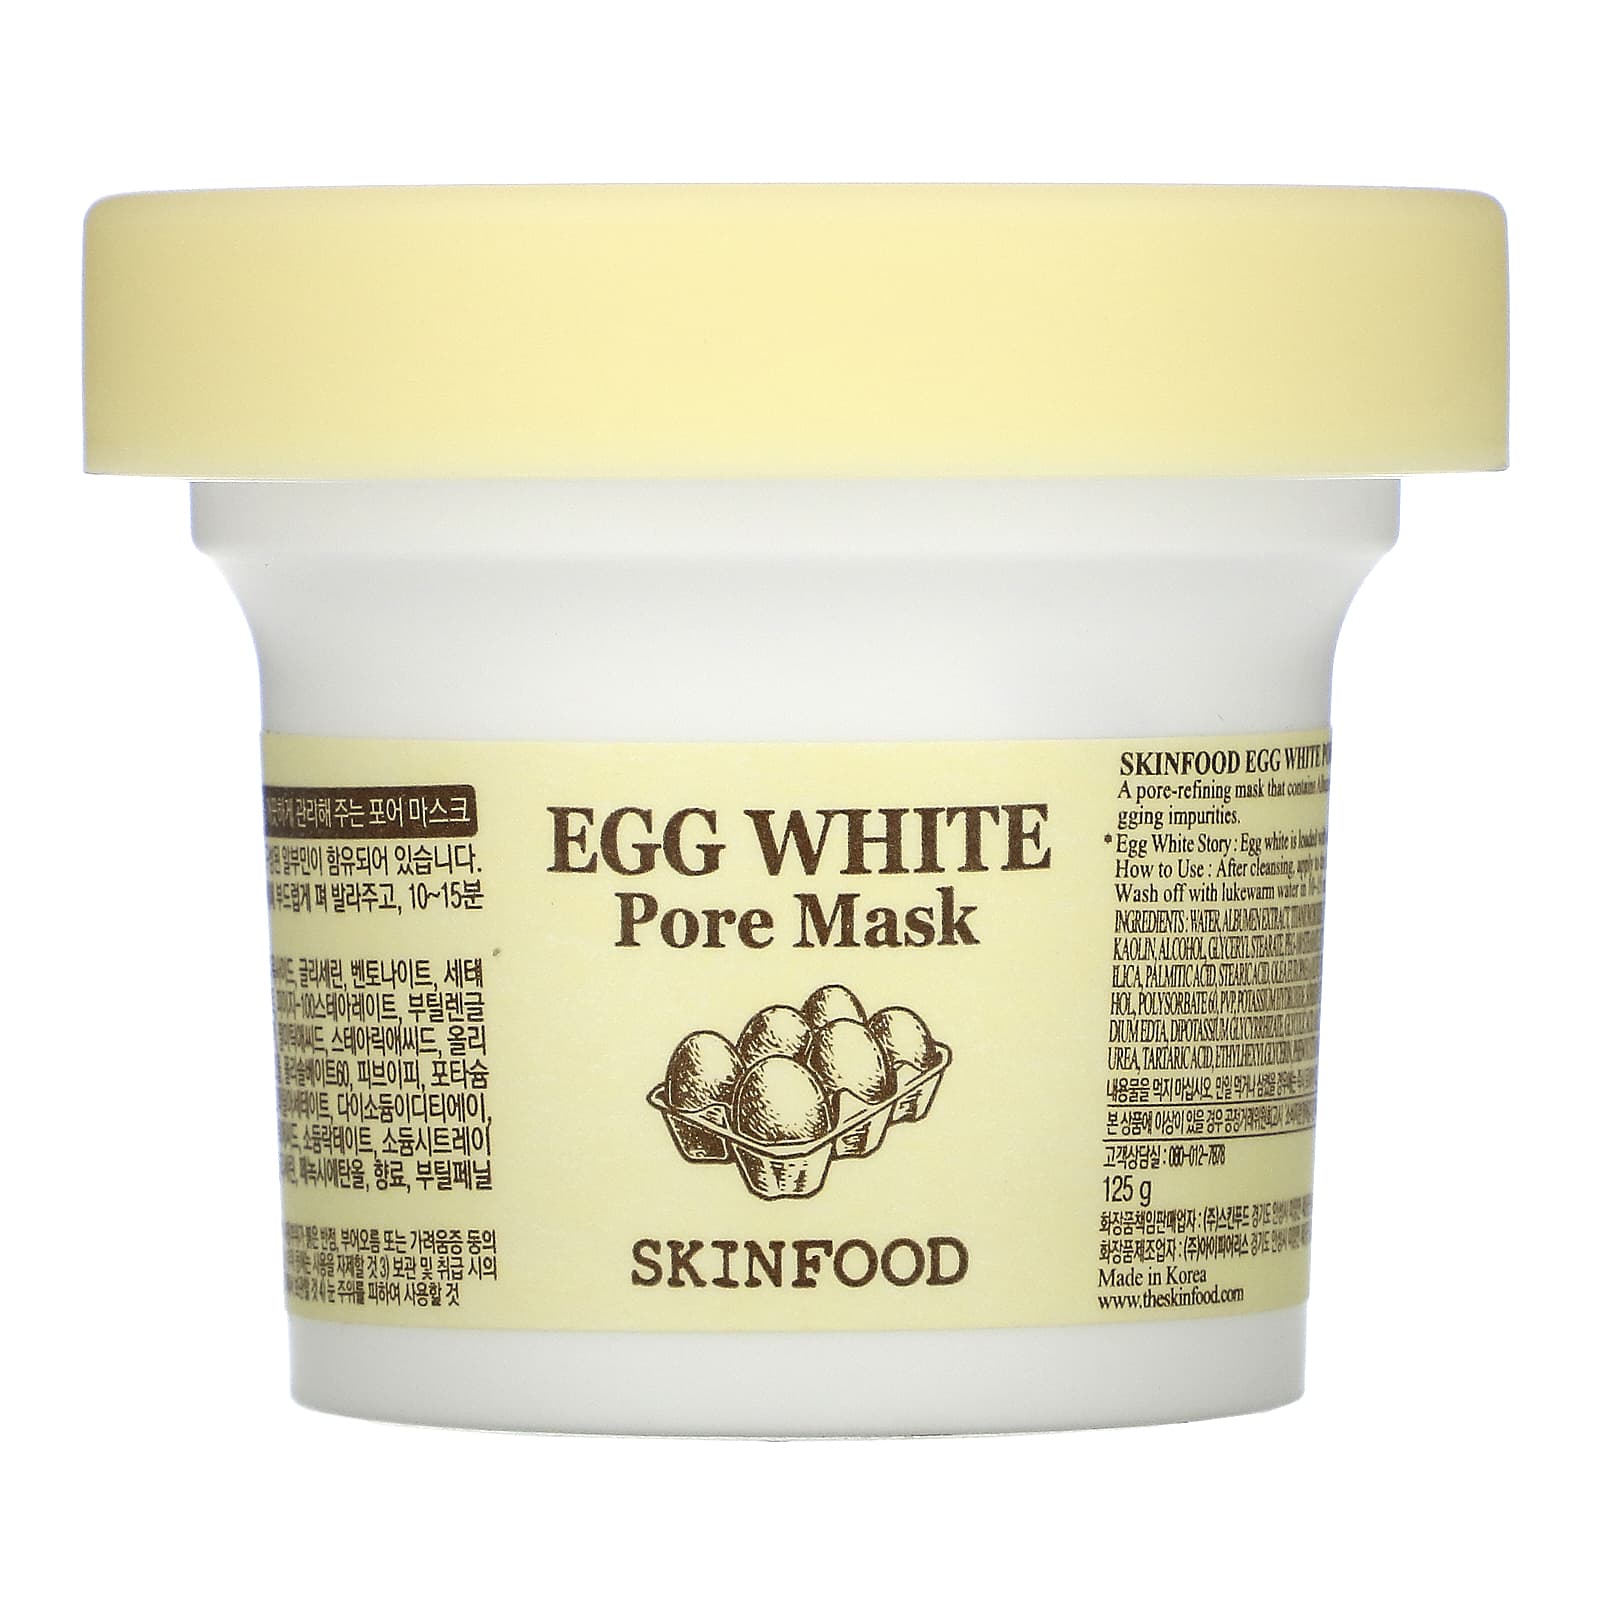 الاستوديو قرصة دم  Skinfood, Egg White Pore Beauty Mask, 4.41 oz (125 g)